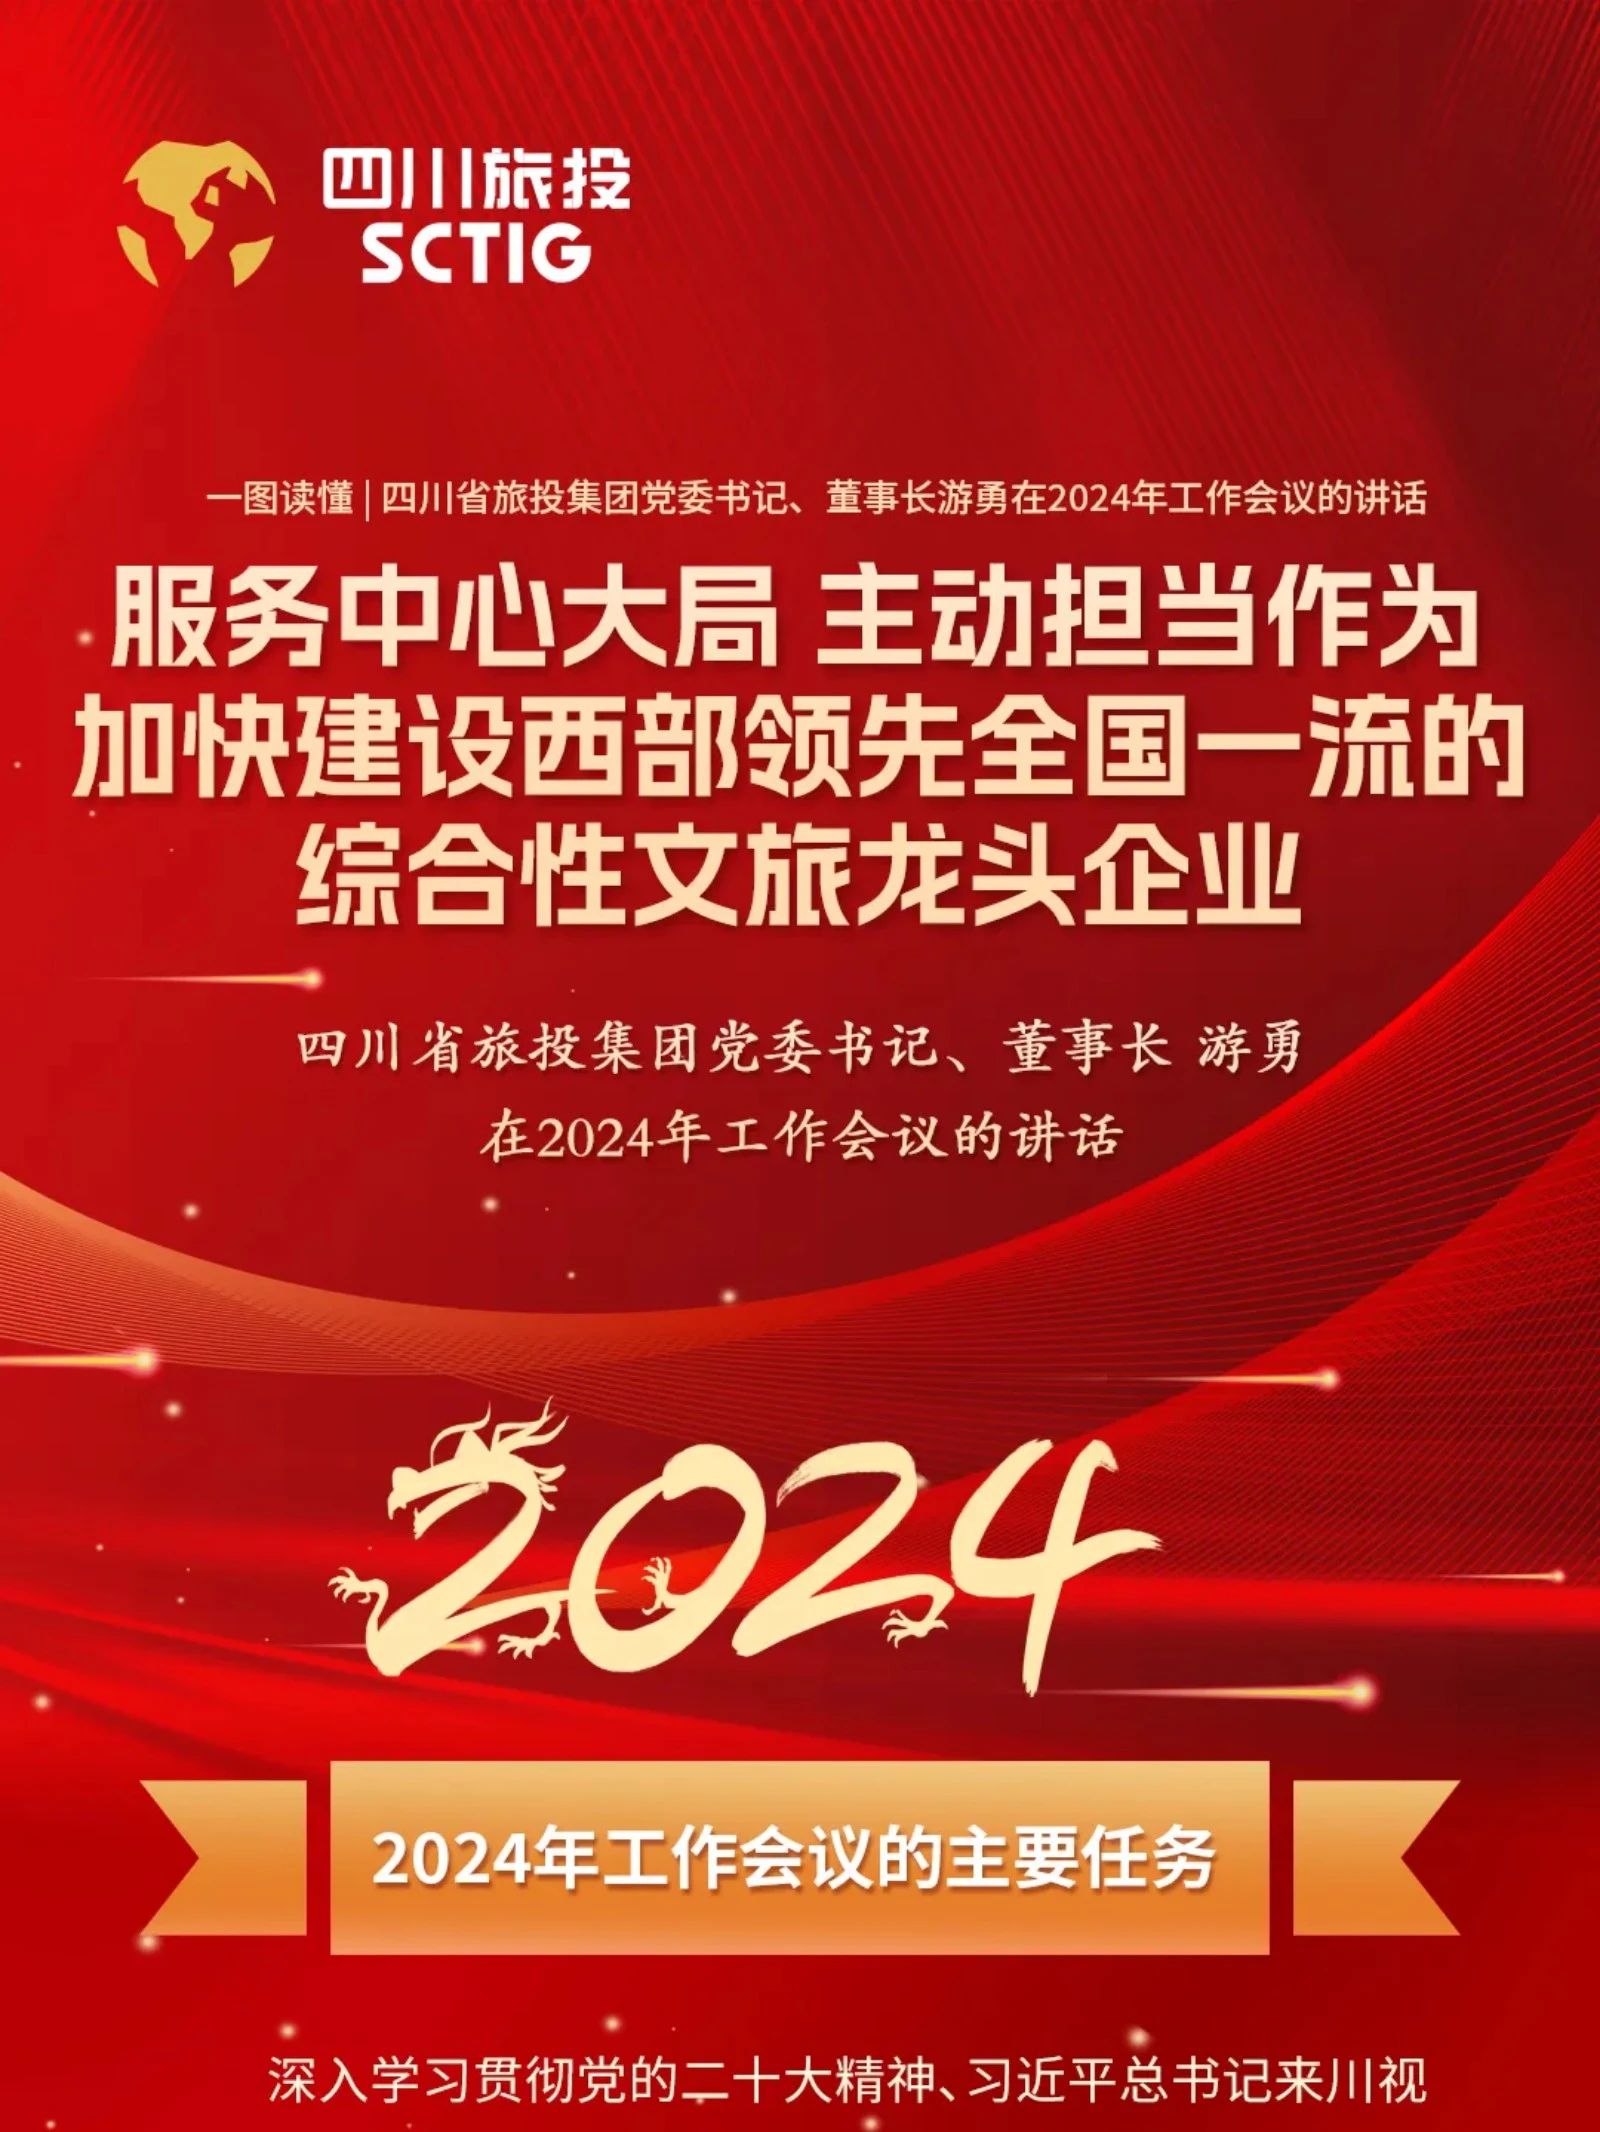 四川省兴发娱乐集团党委书记、董事长游勇在2024年事情集会的讲话